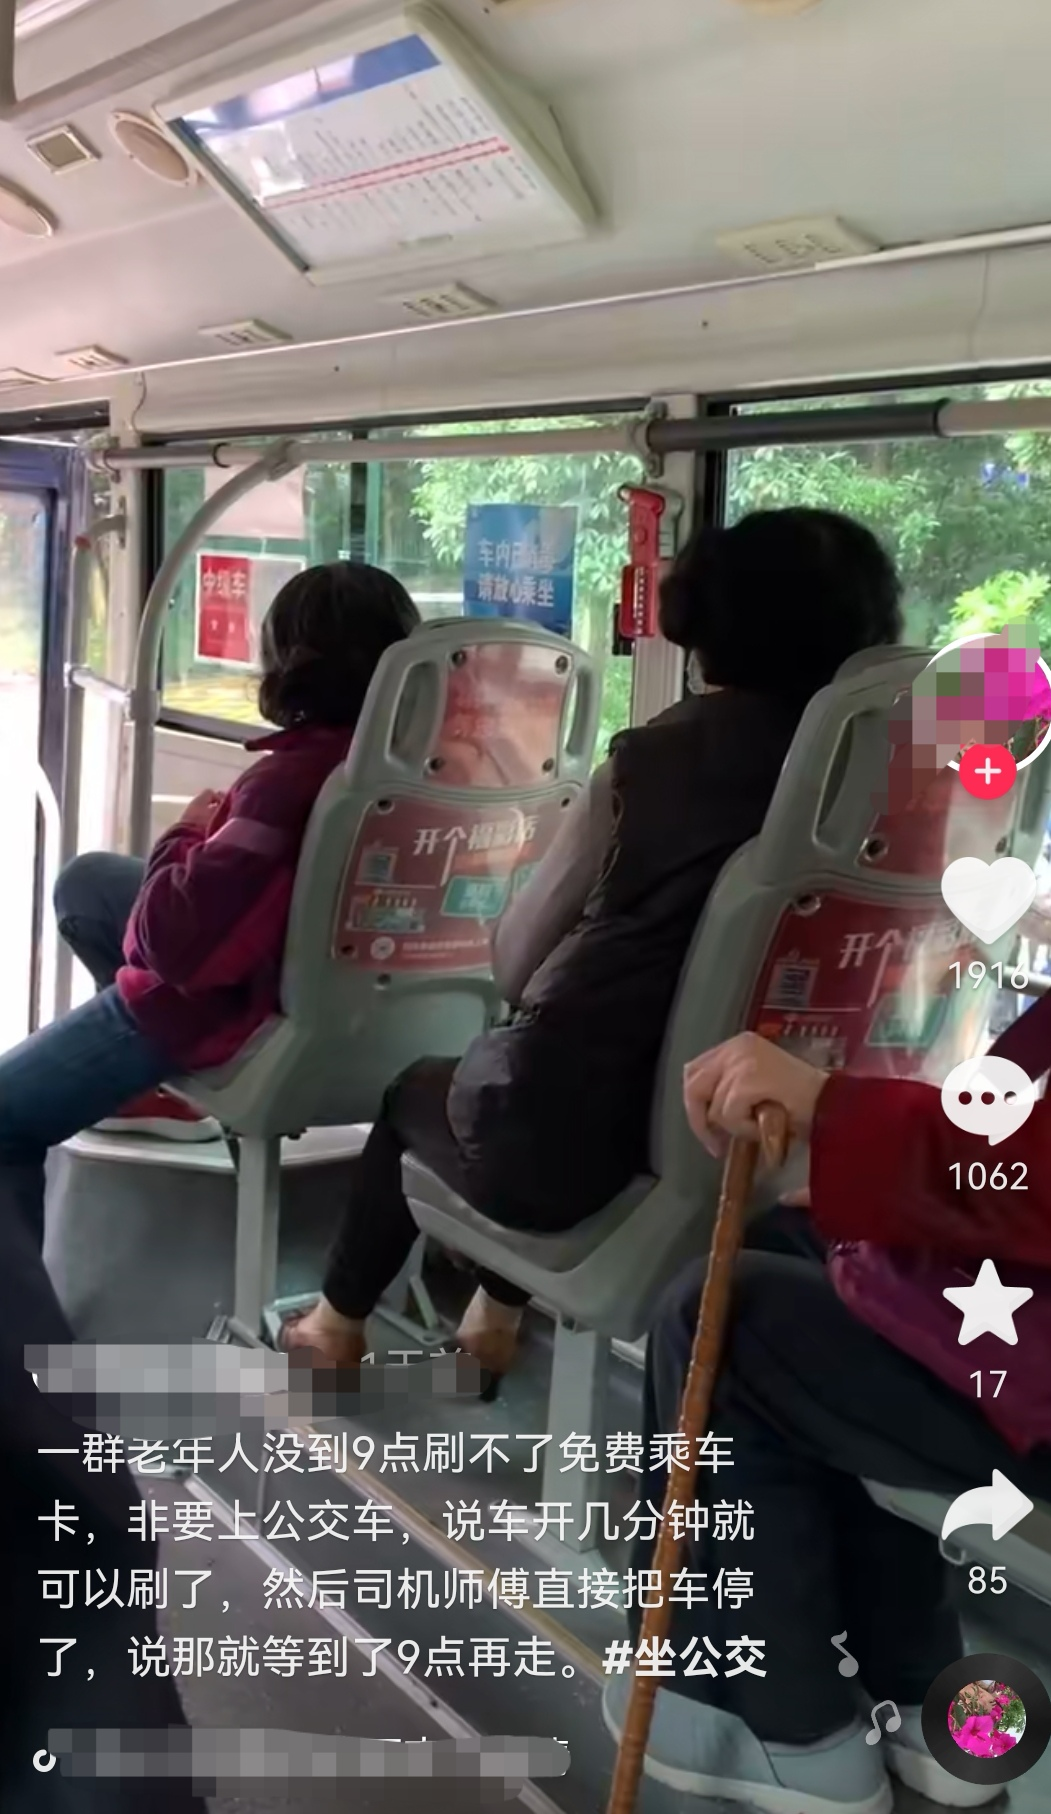 网传重庆多位老人早高峰上公交不买票，称“到免费时间再刷”，司机无奈停车，公司回应